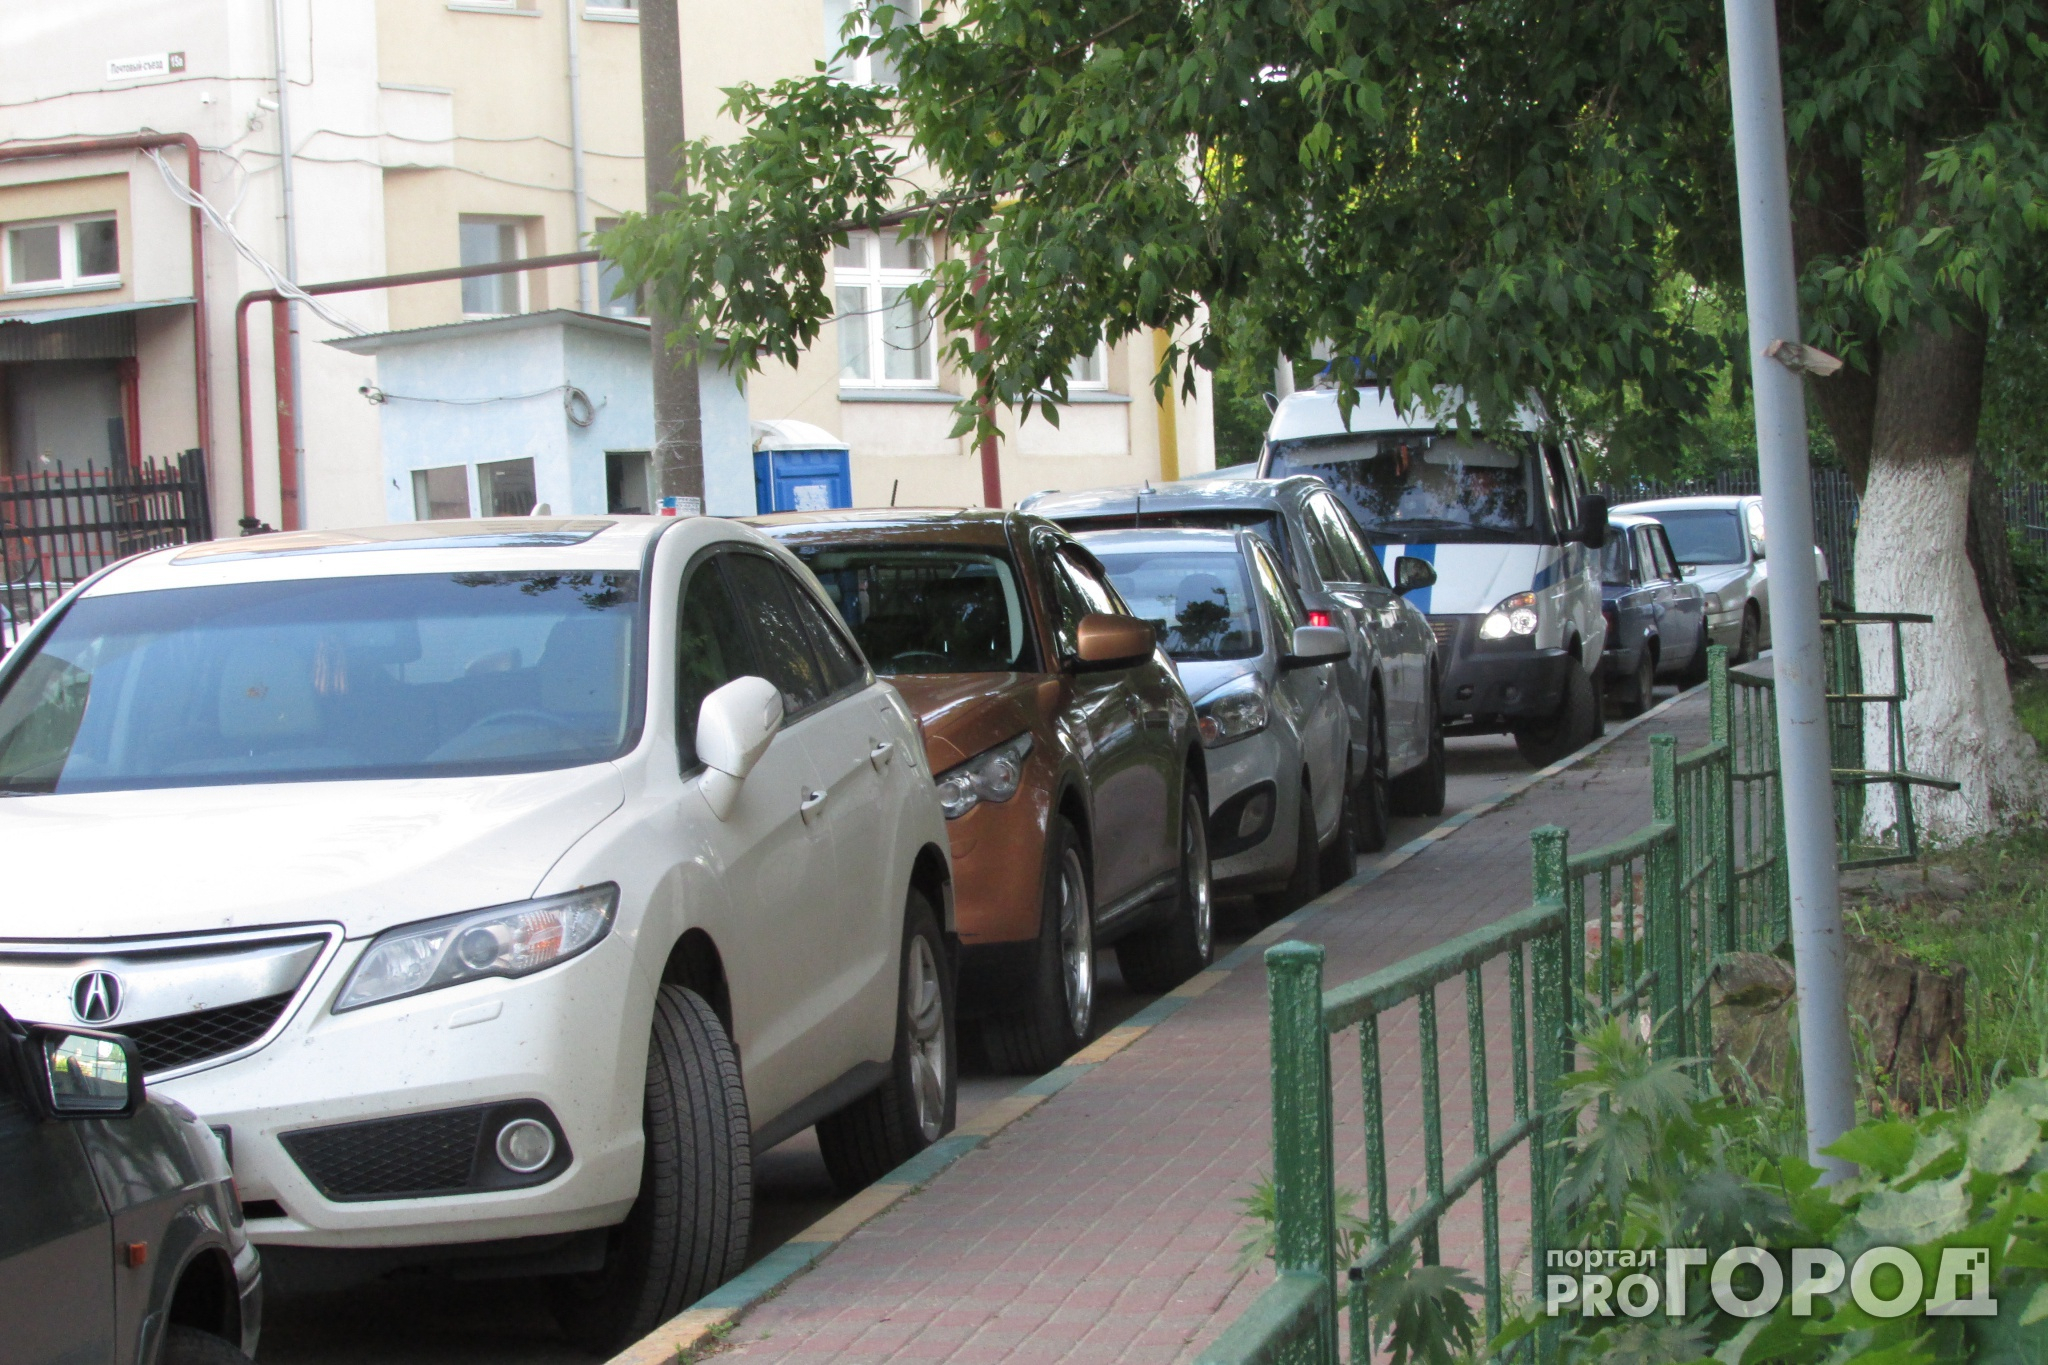 Парковку автомобилей запретят на улице Щербакова с 25 октября